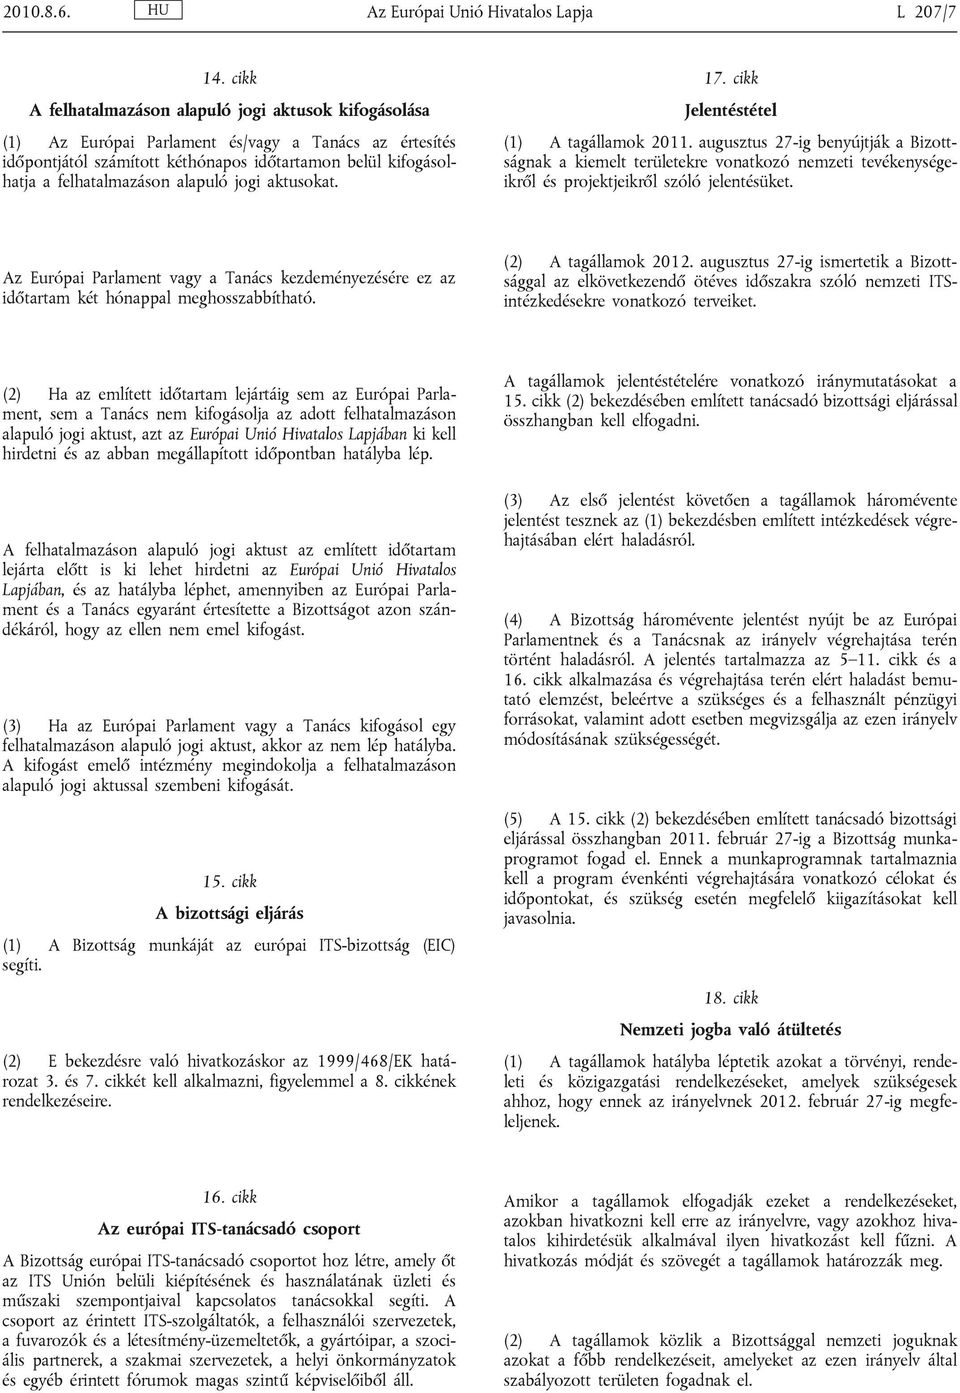 alapuló jogi aktusokat. 17. cikk Jelentéstétel (1) A tagállamok 2011.